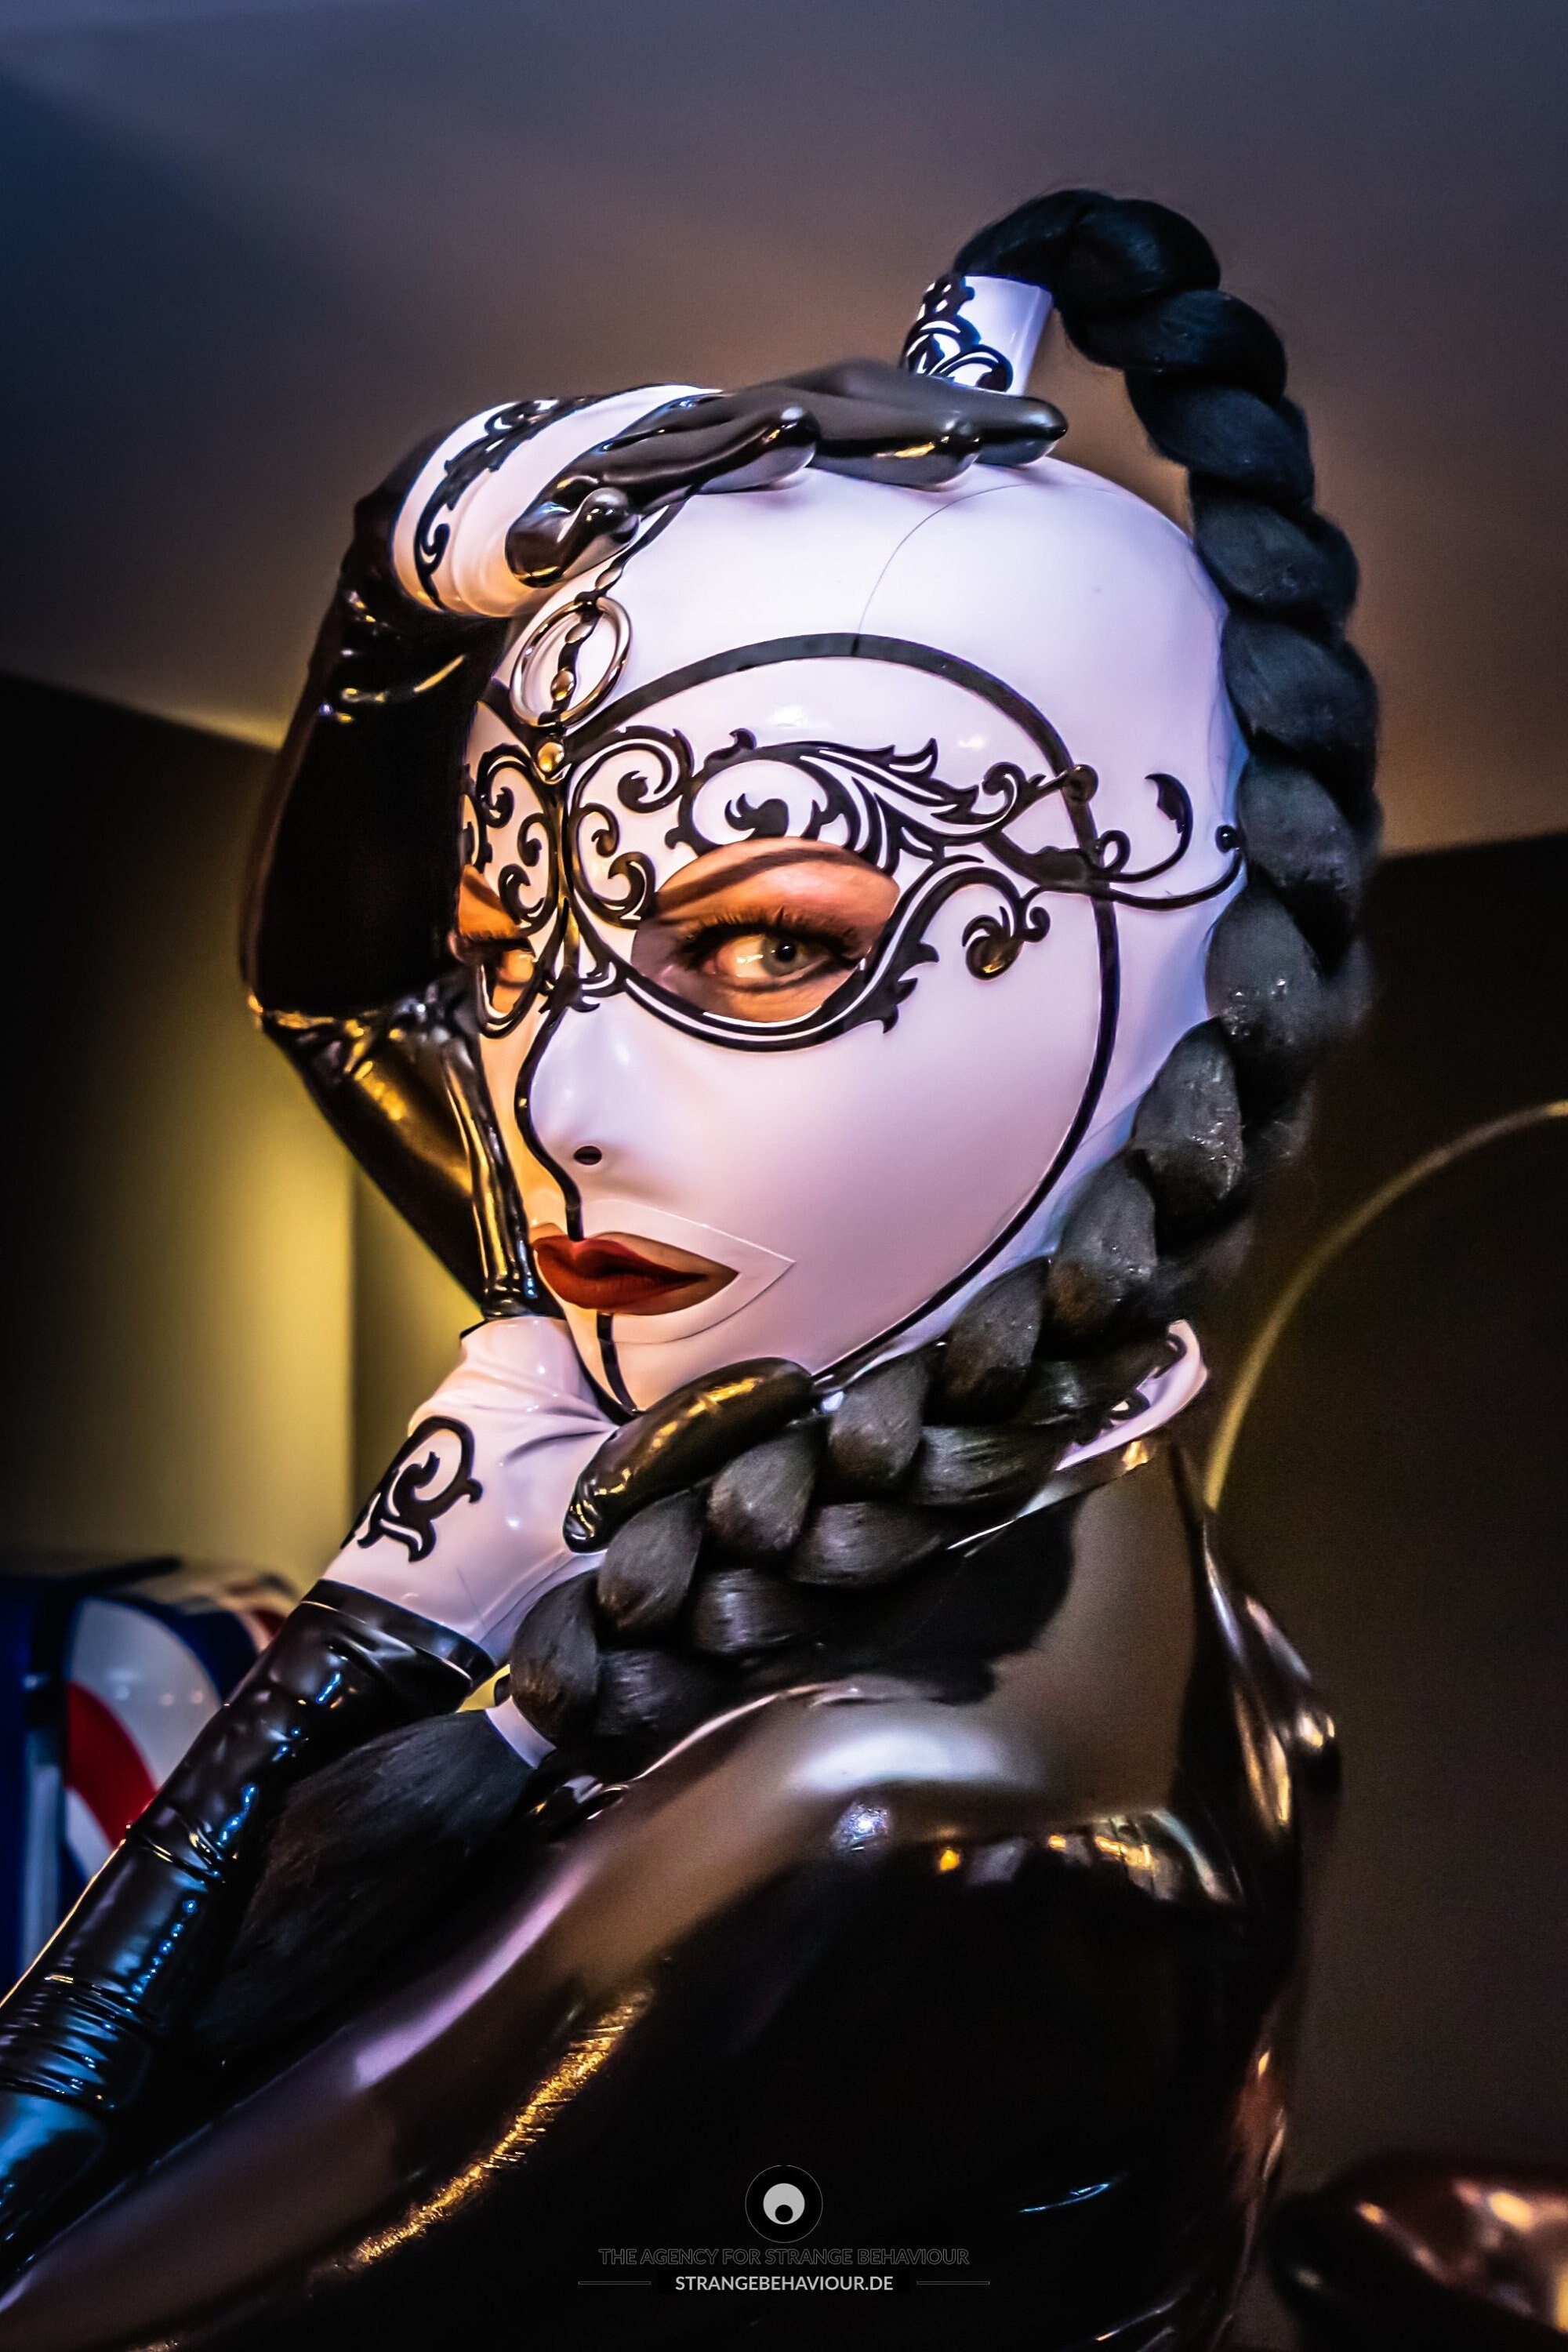 Mufeng Cagoule Sexy Latex 3D Protection Unisexe Halloween Couverture  Complet Latex Métallique Brillant Femme Homme Couvre-Chef Jeu de rôle  Costume